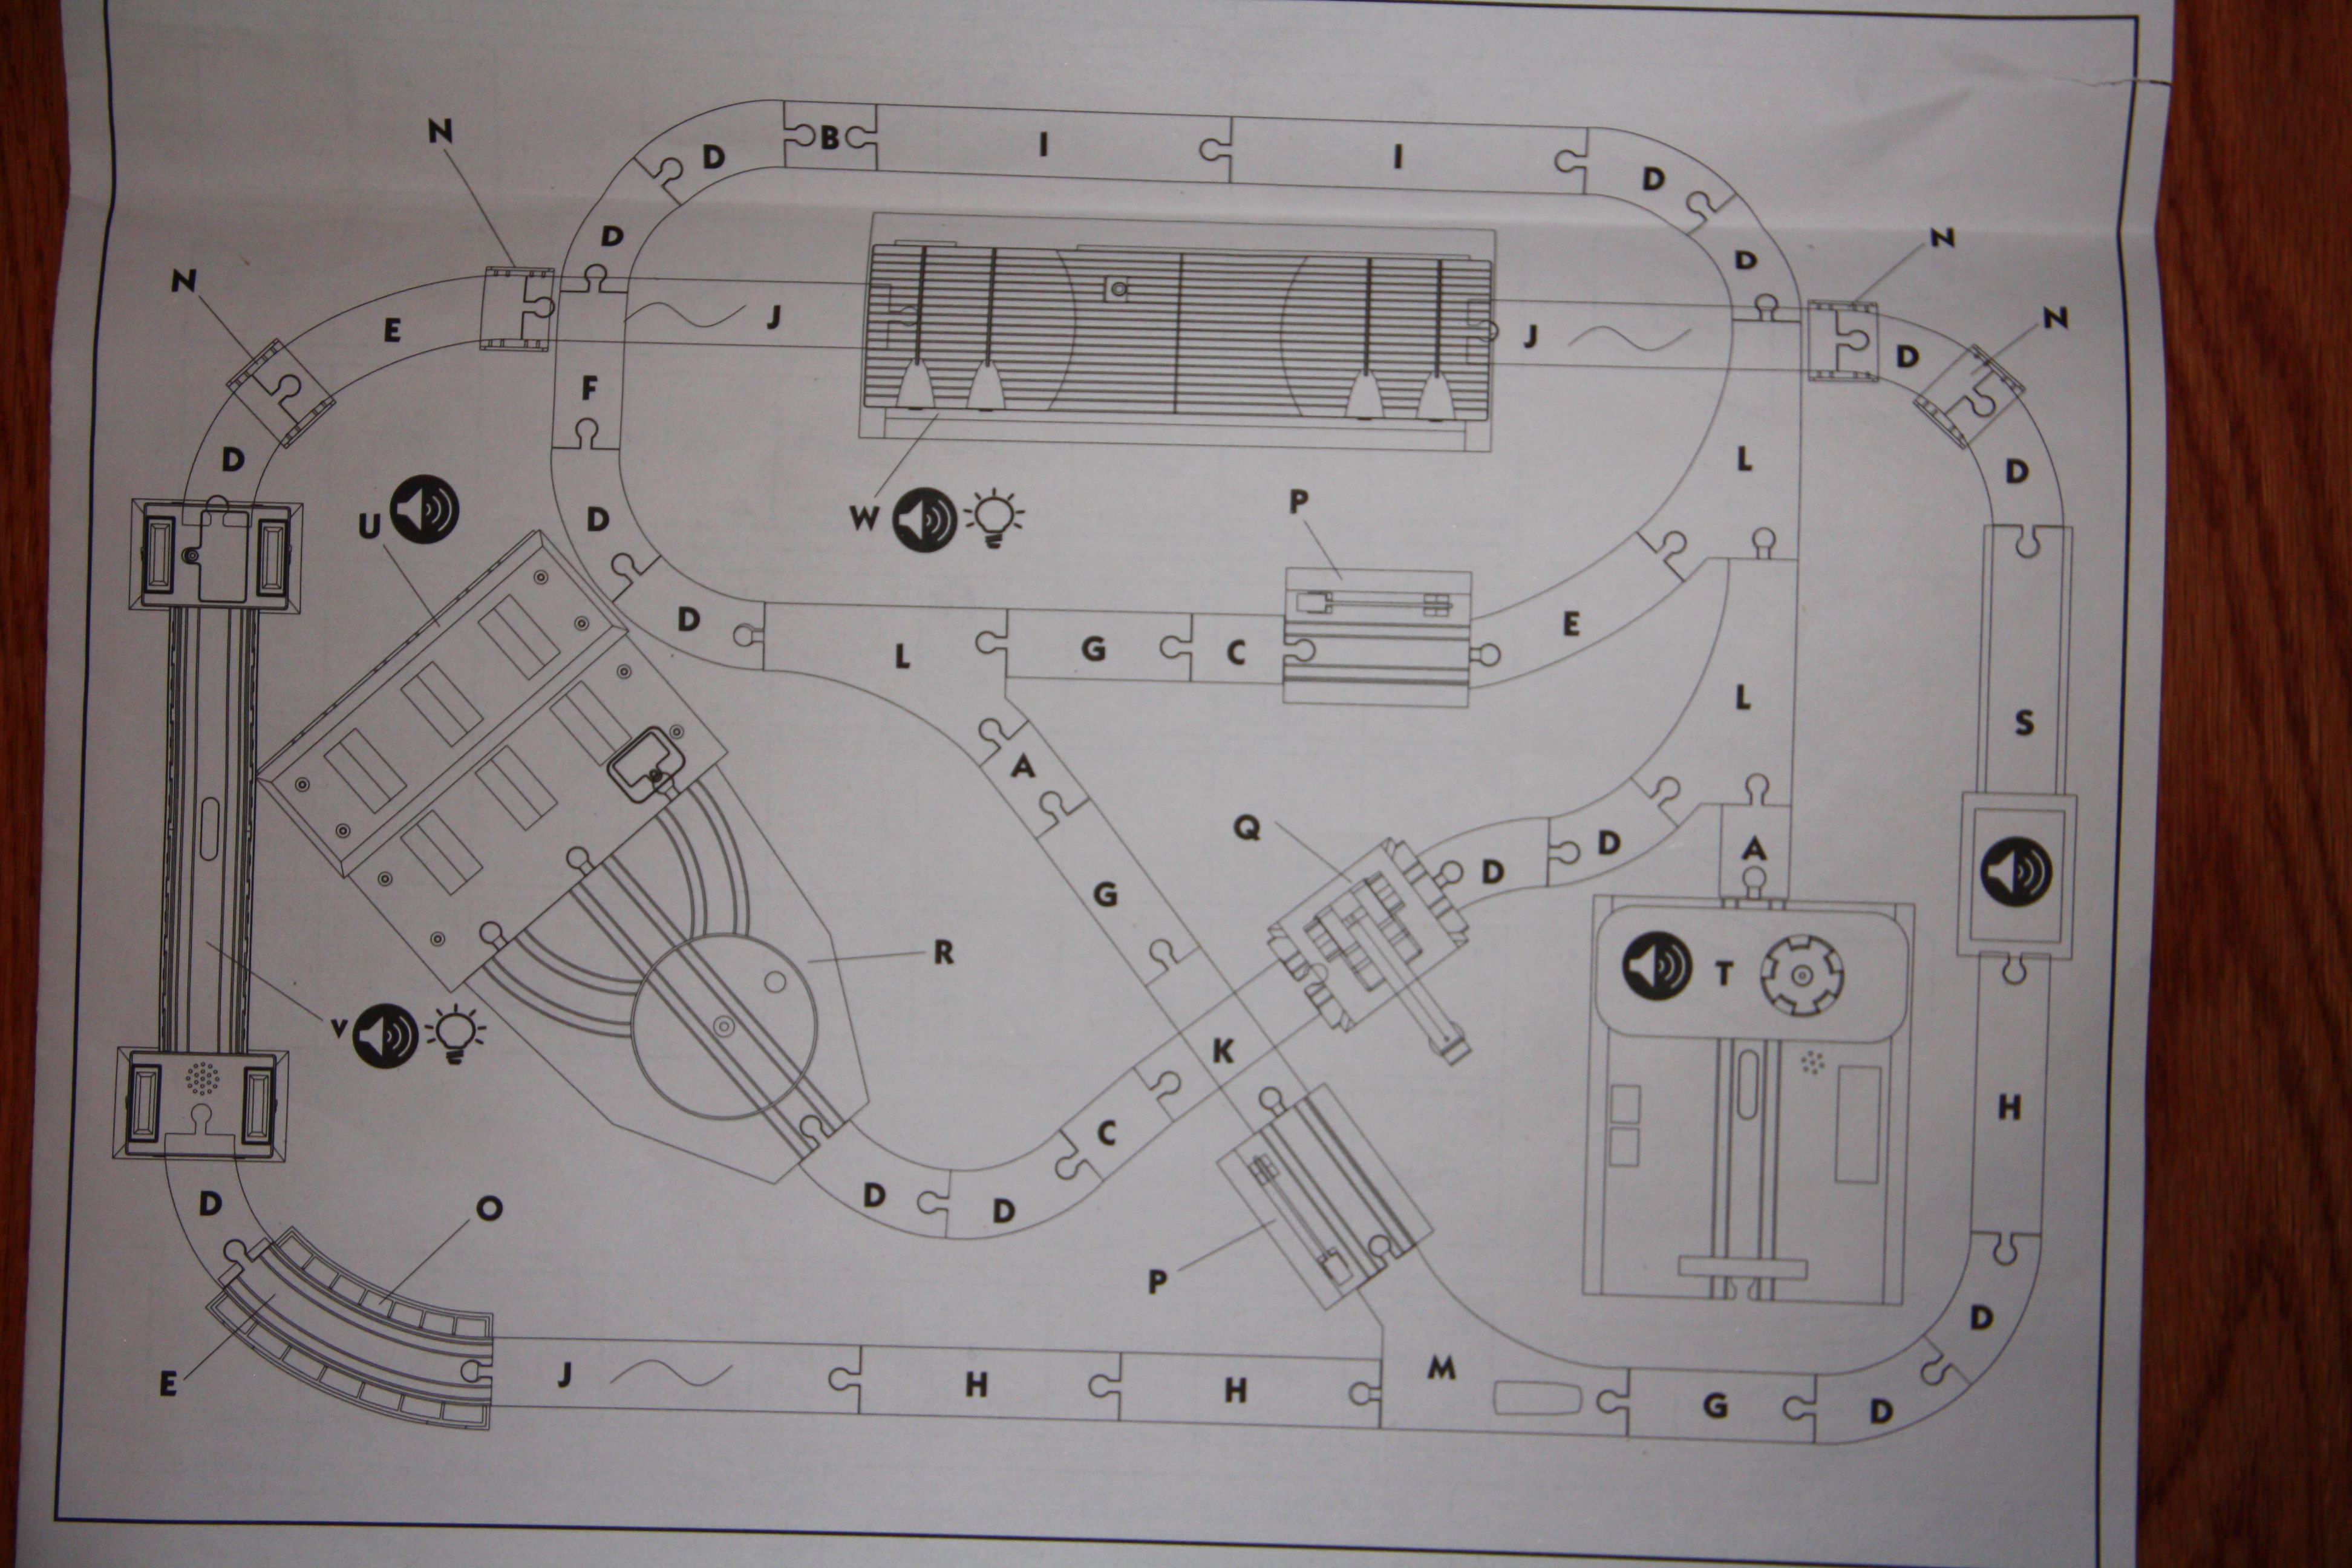 imaginarium train table instructions pdf